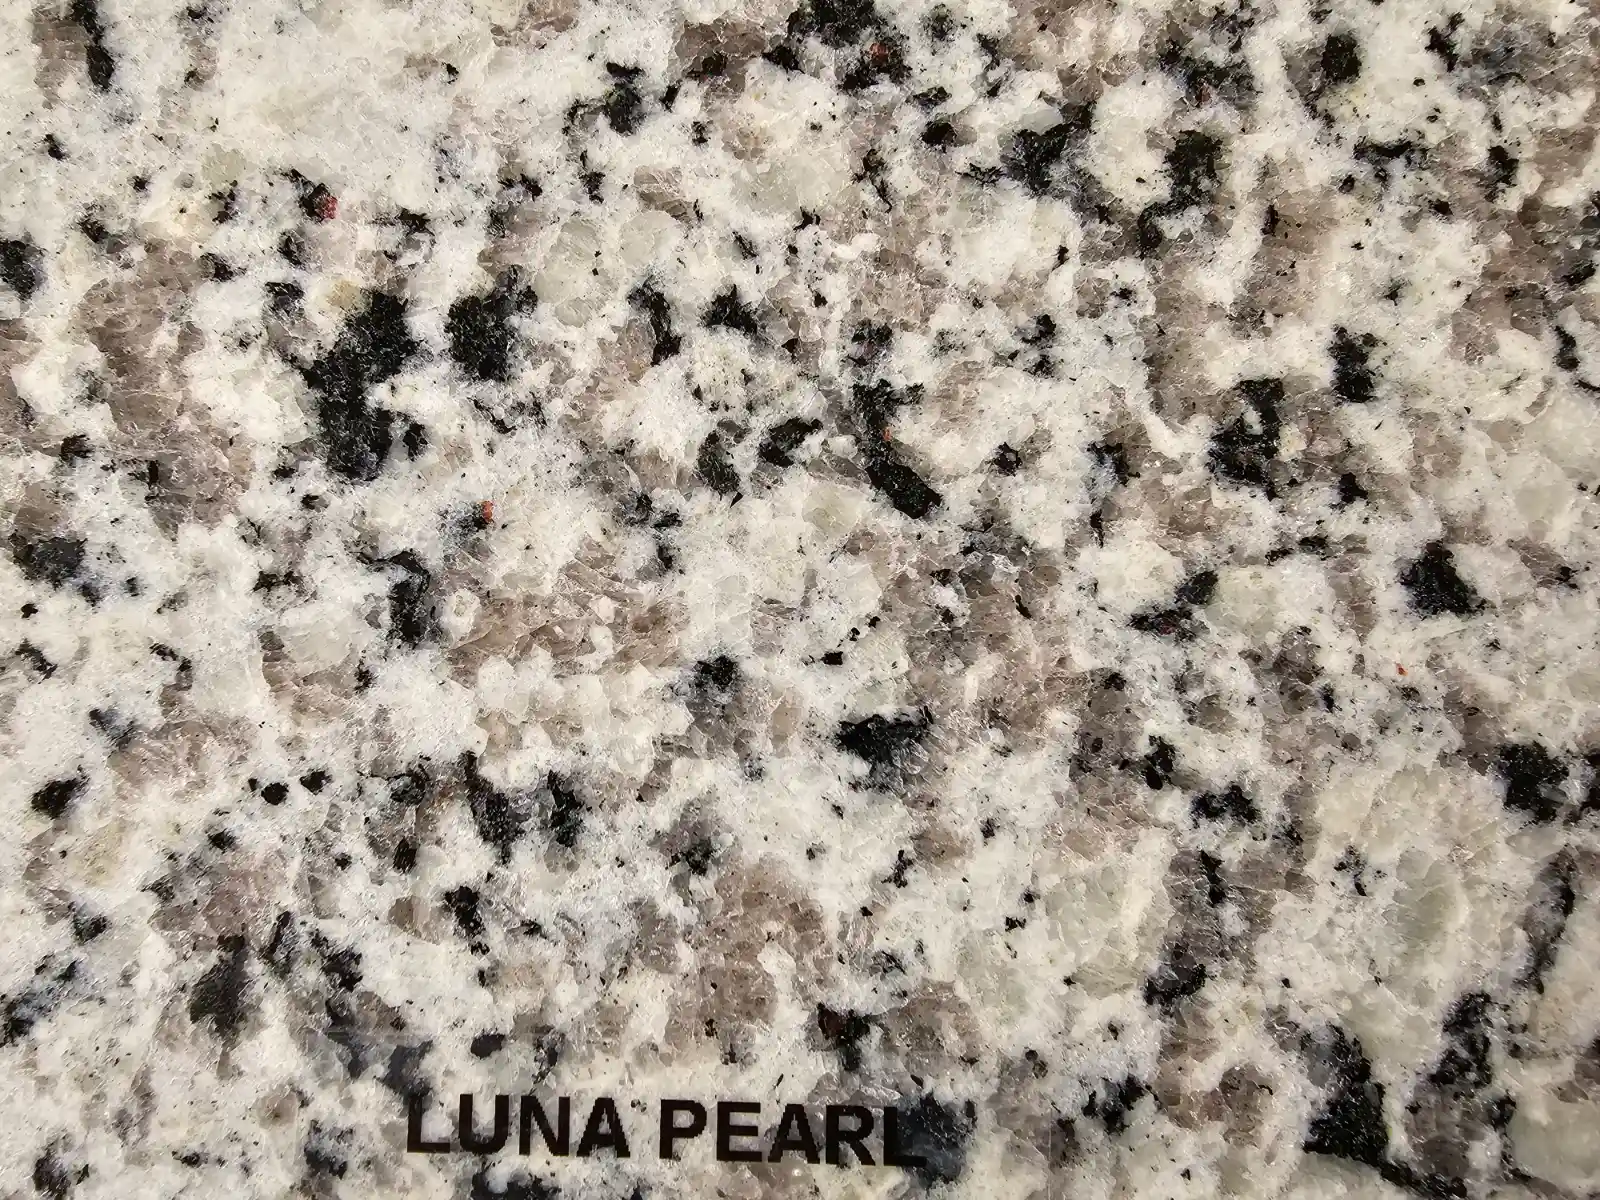 Luna pearl granite countertop style and material